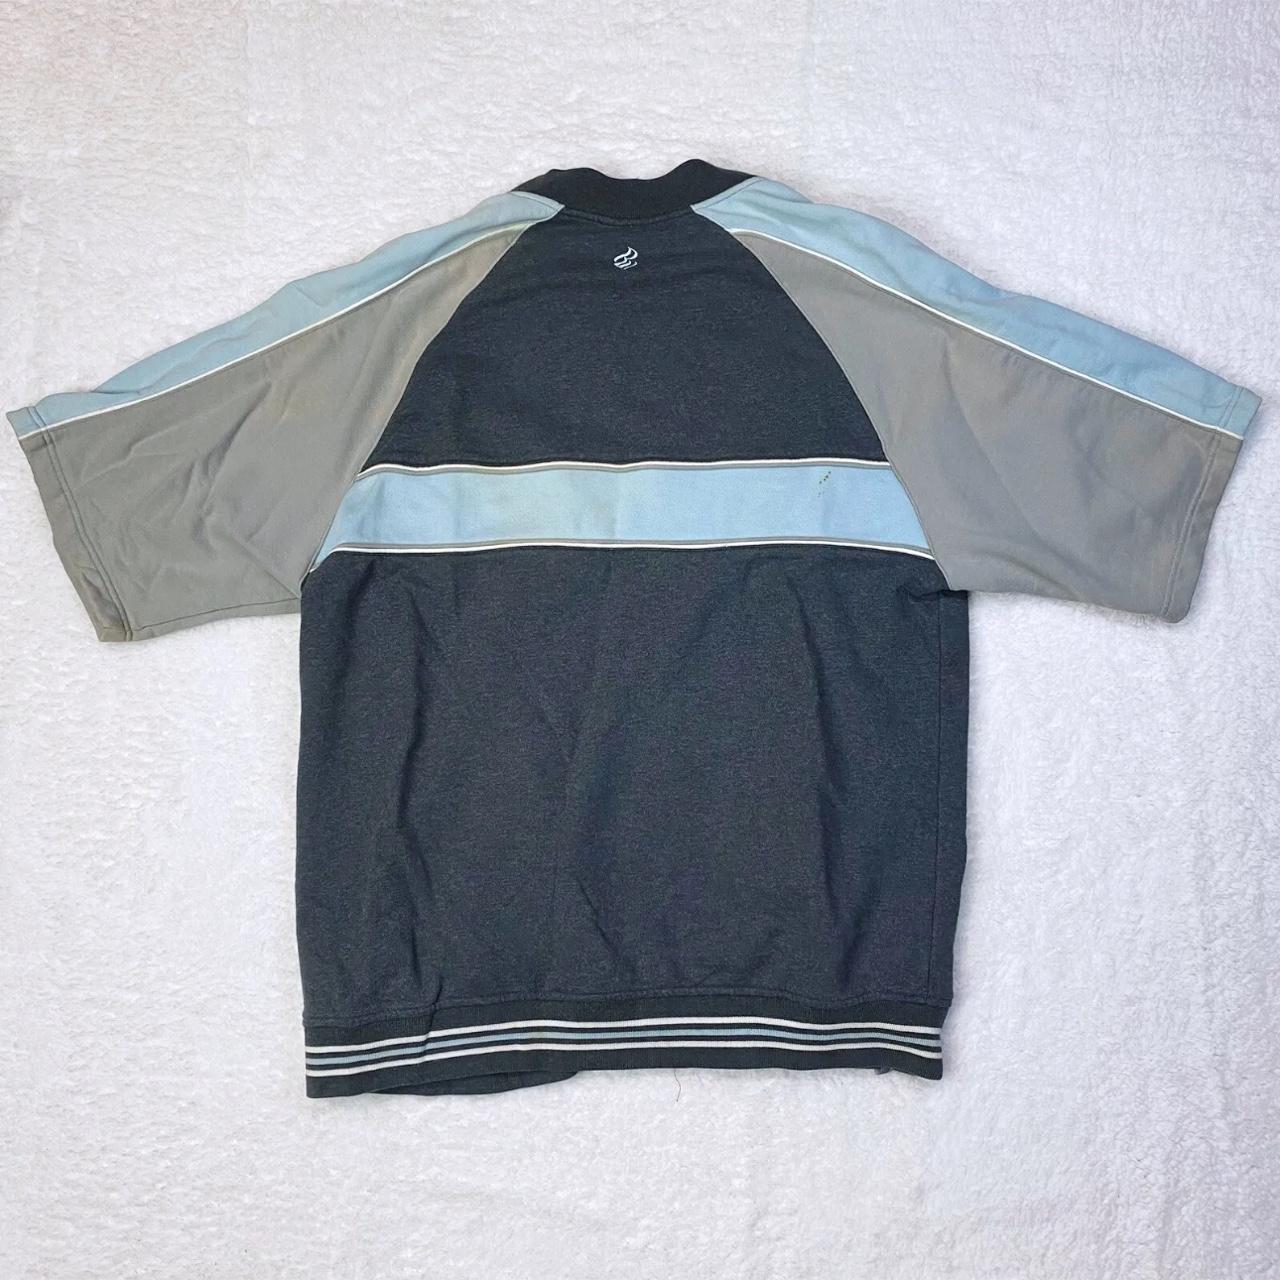 Vintage Rocawear Omega Greek Ivy League Zip Up Shirt... - Depop